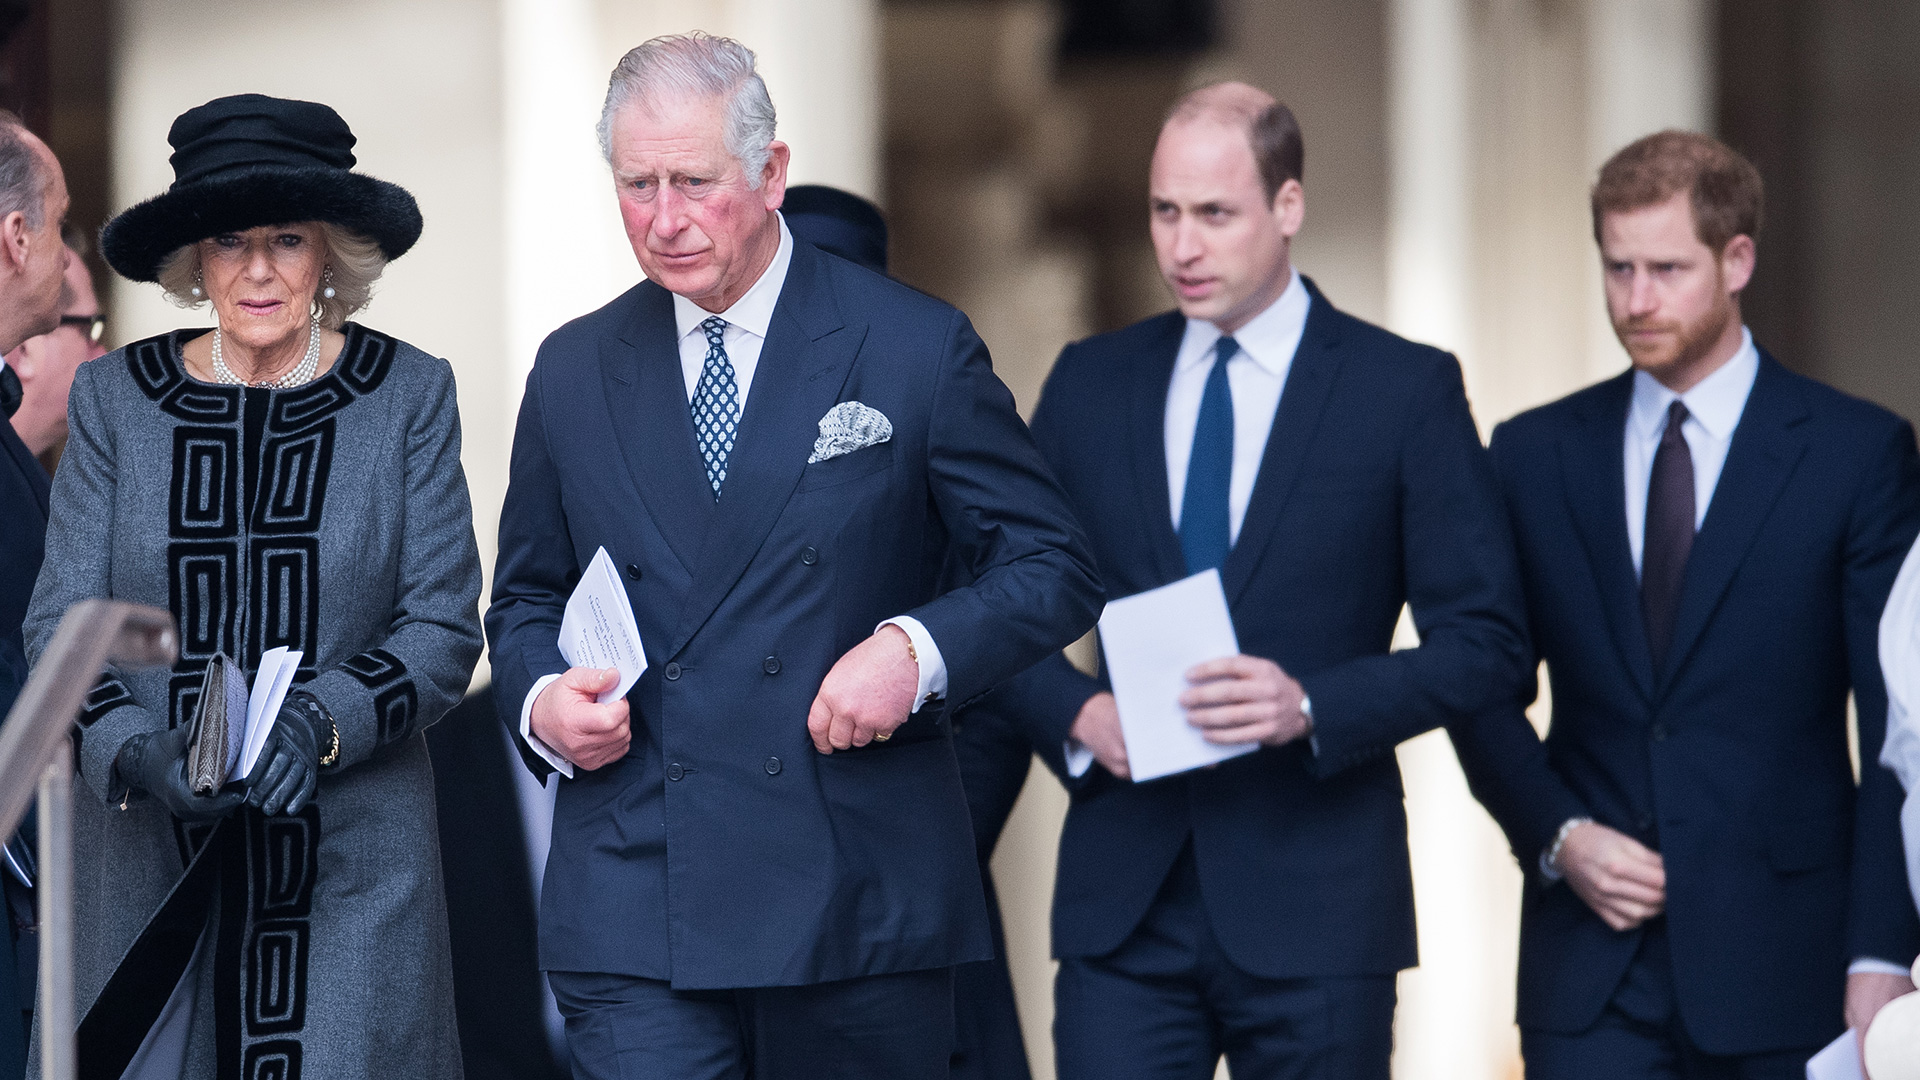 El Príncipe Carlos, el Príncipe de Gales; Camilla, la Duquesa de Cornualles; el Príncipe William, el Duque de Cambridge; y el Príncipe Harry (antes de renunciar a la familia real) (Foto de Samir Hussein / Samir Hussein / WireImage)